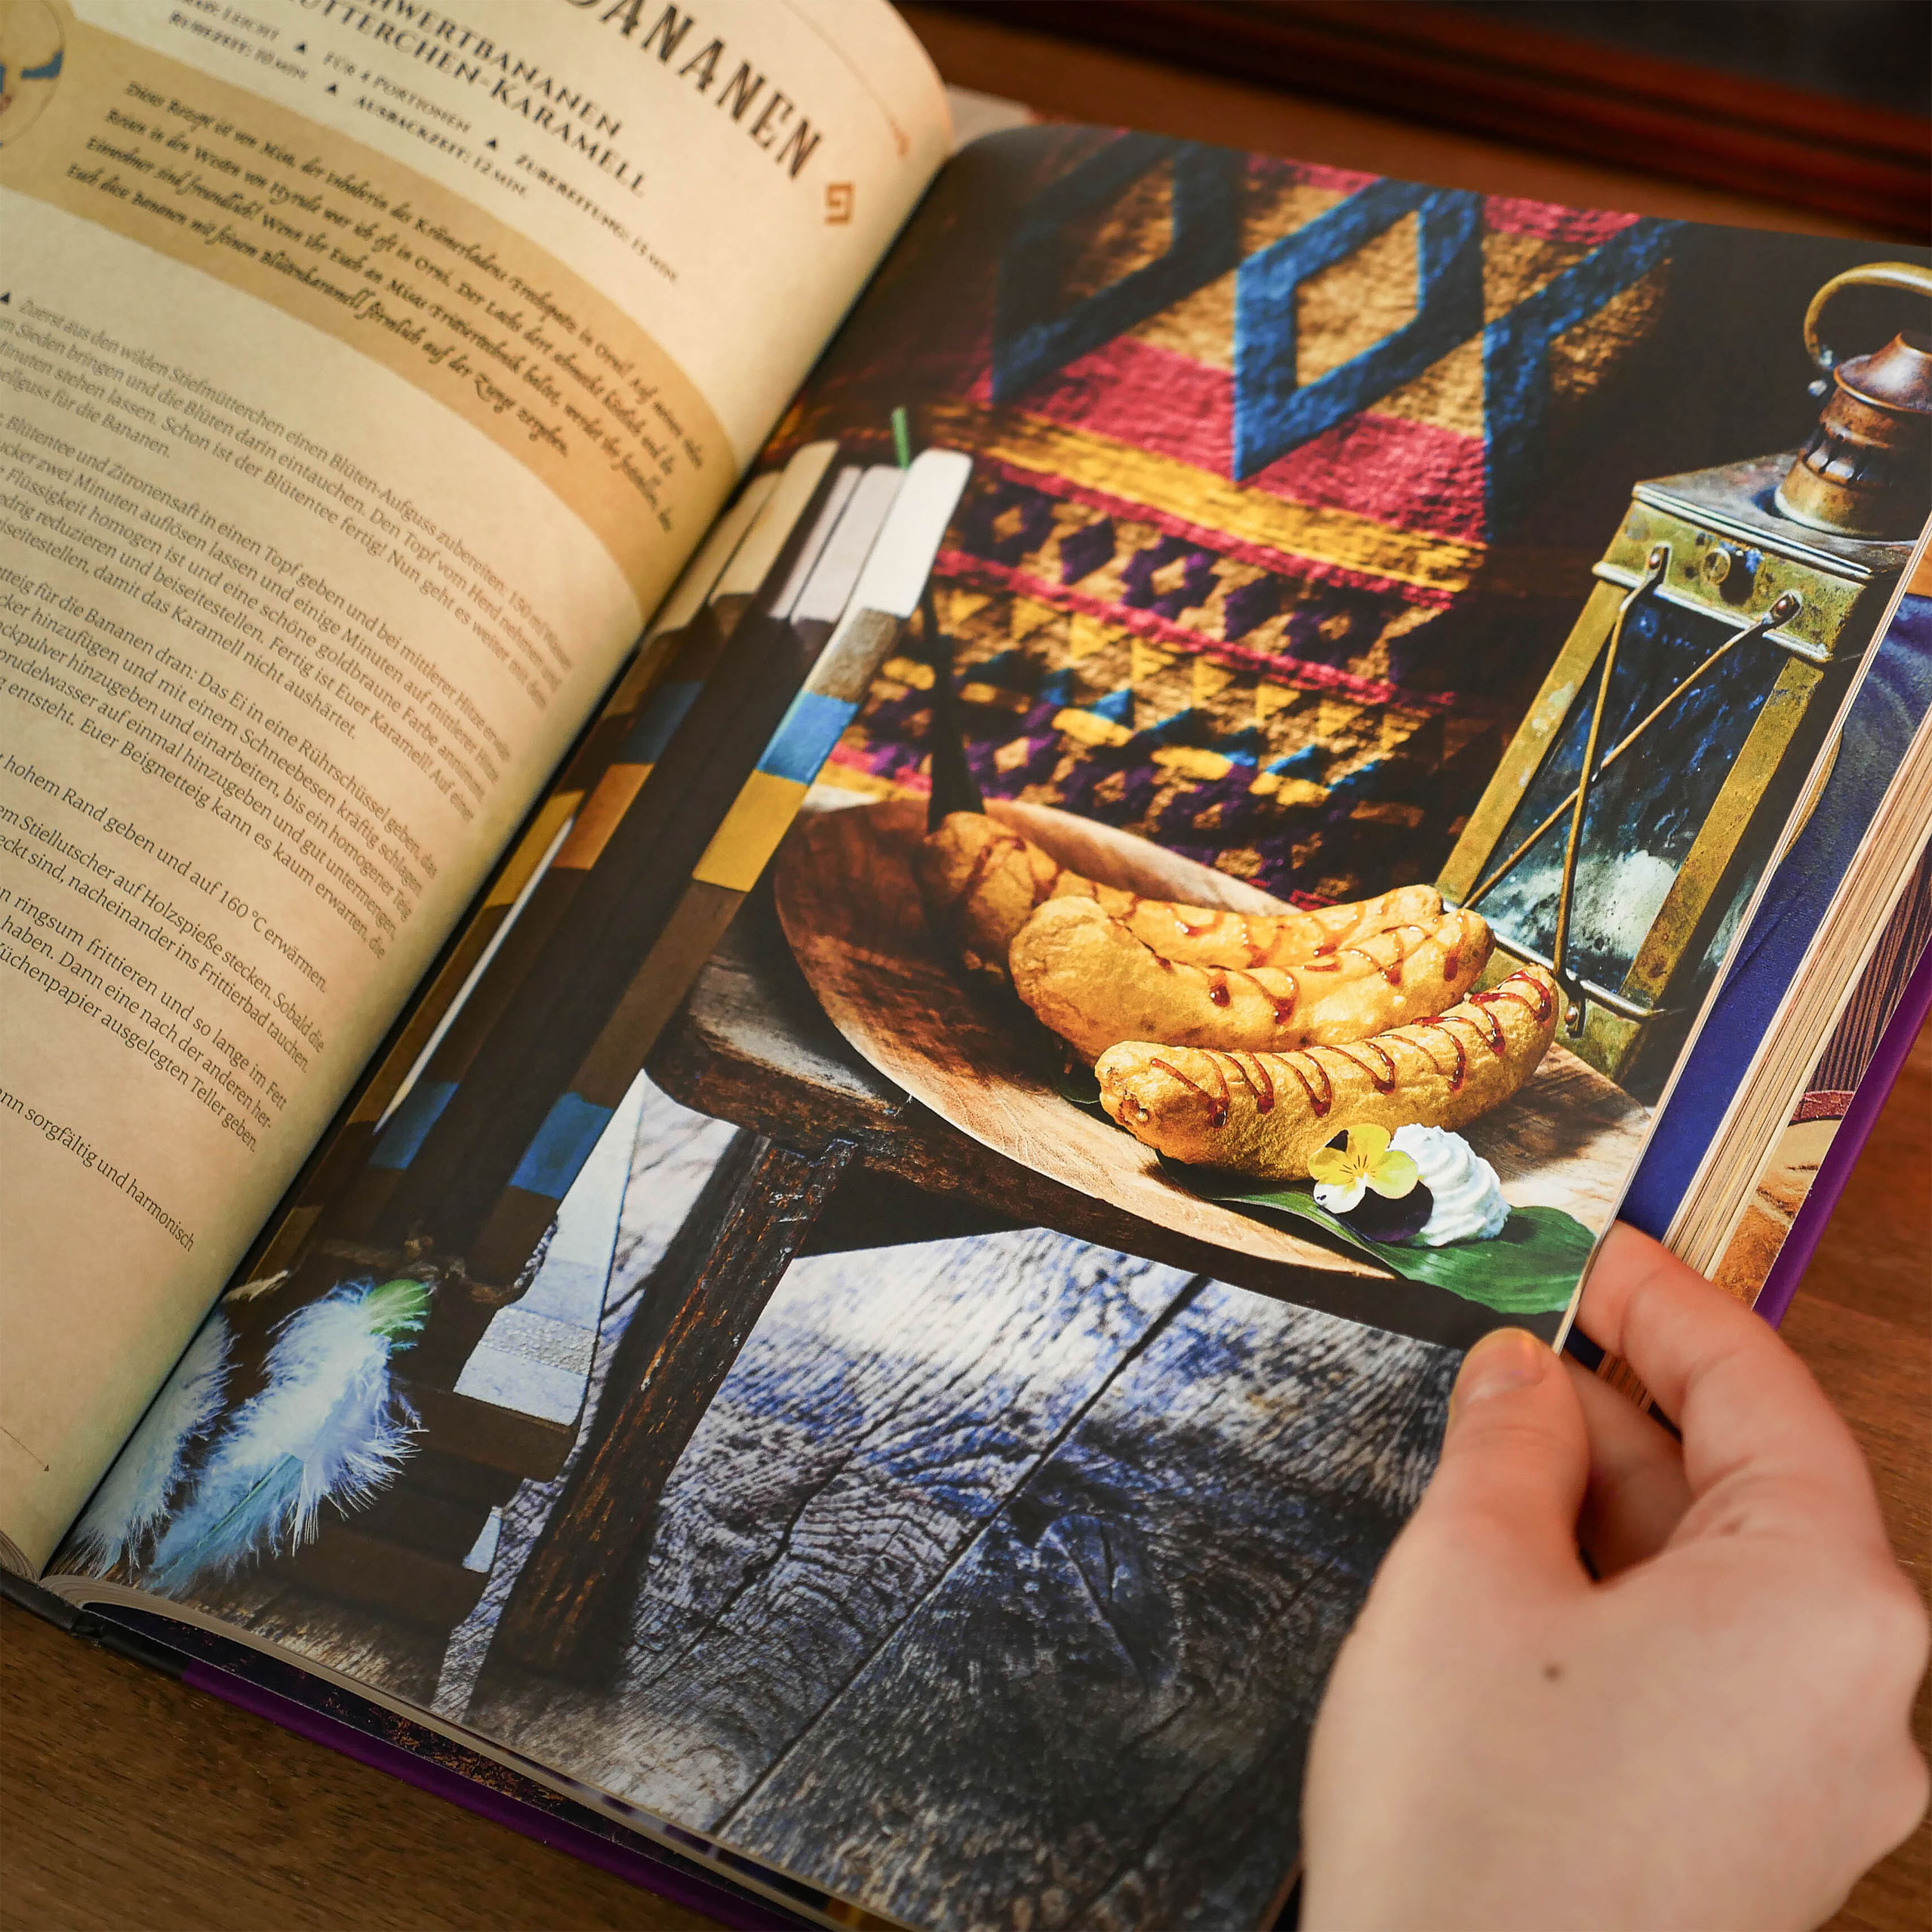 The Legendary Cuisine of Zelda - Cookbook